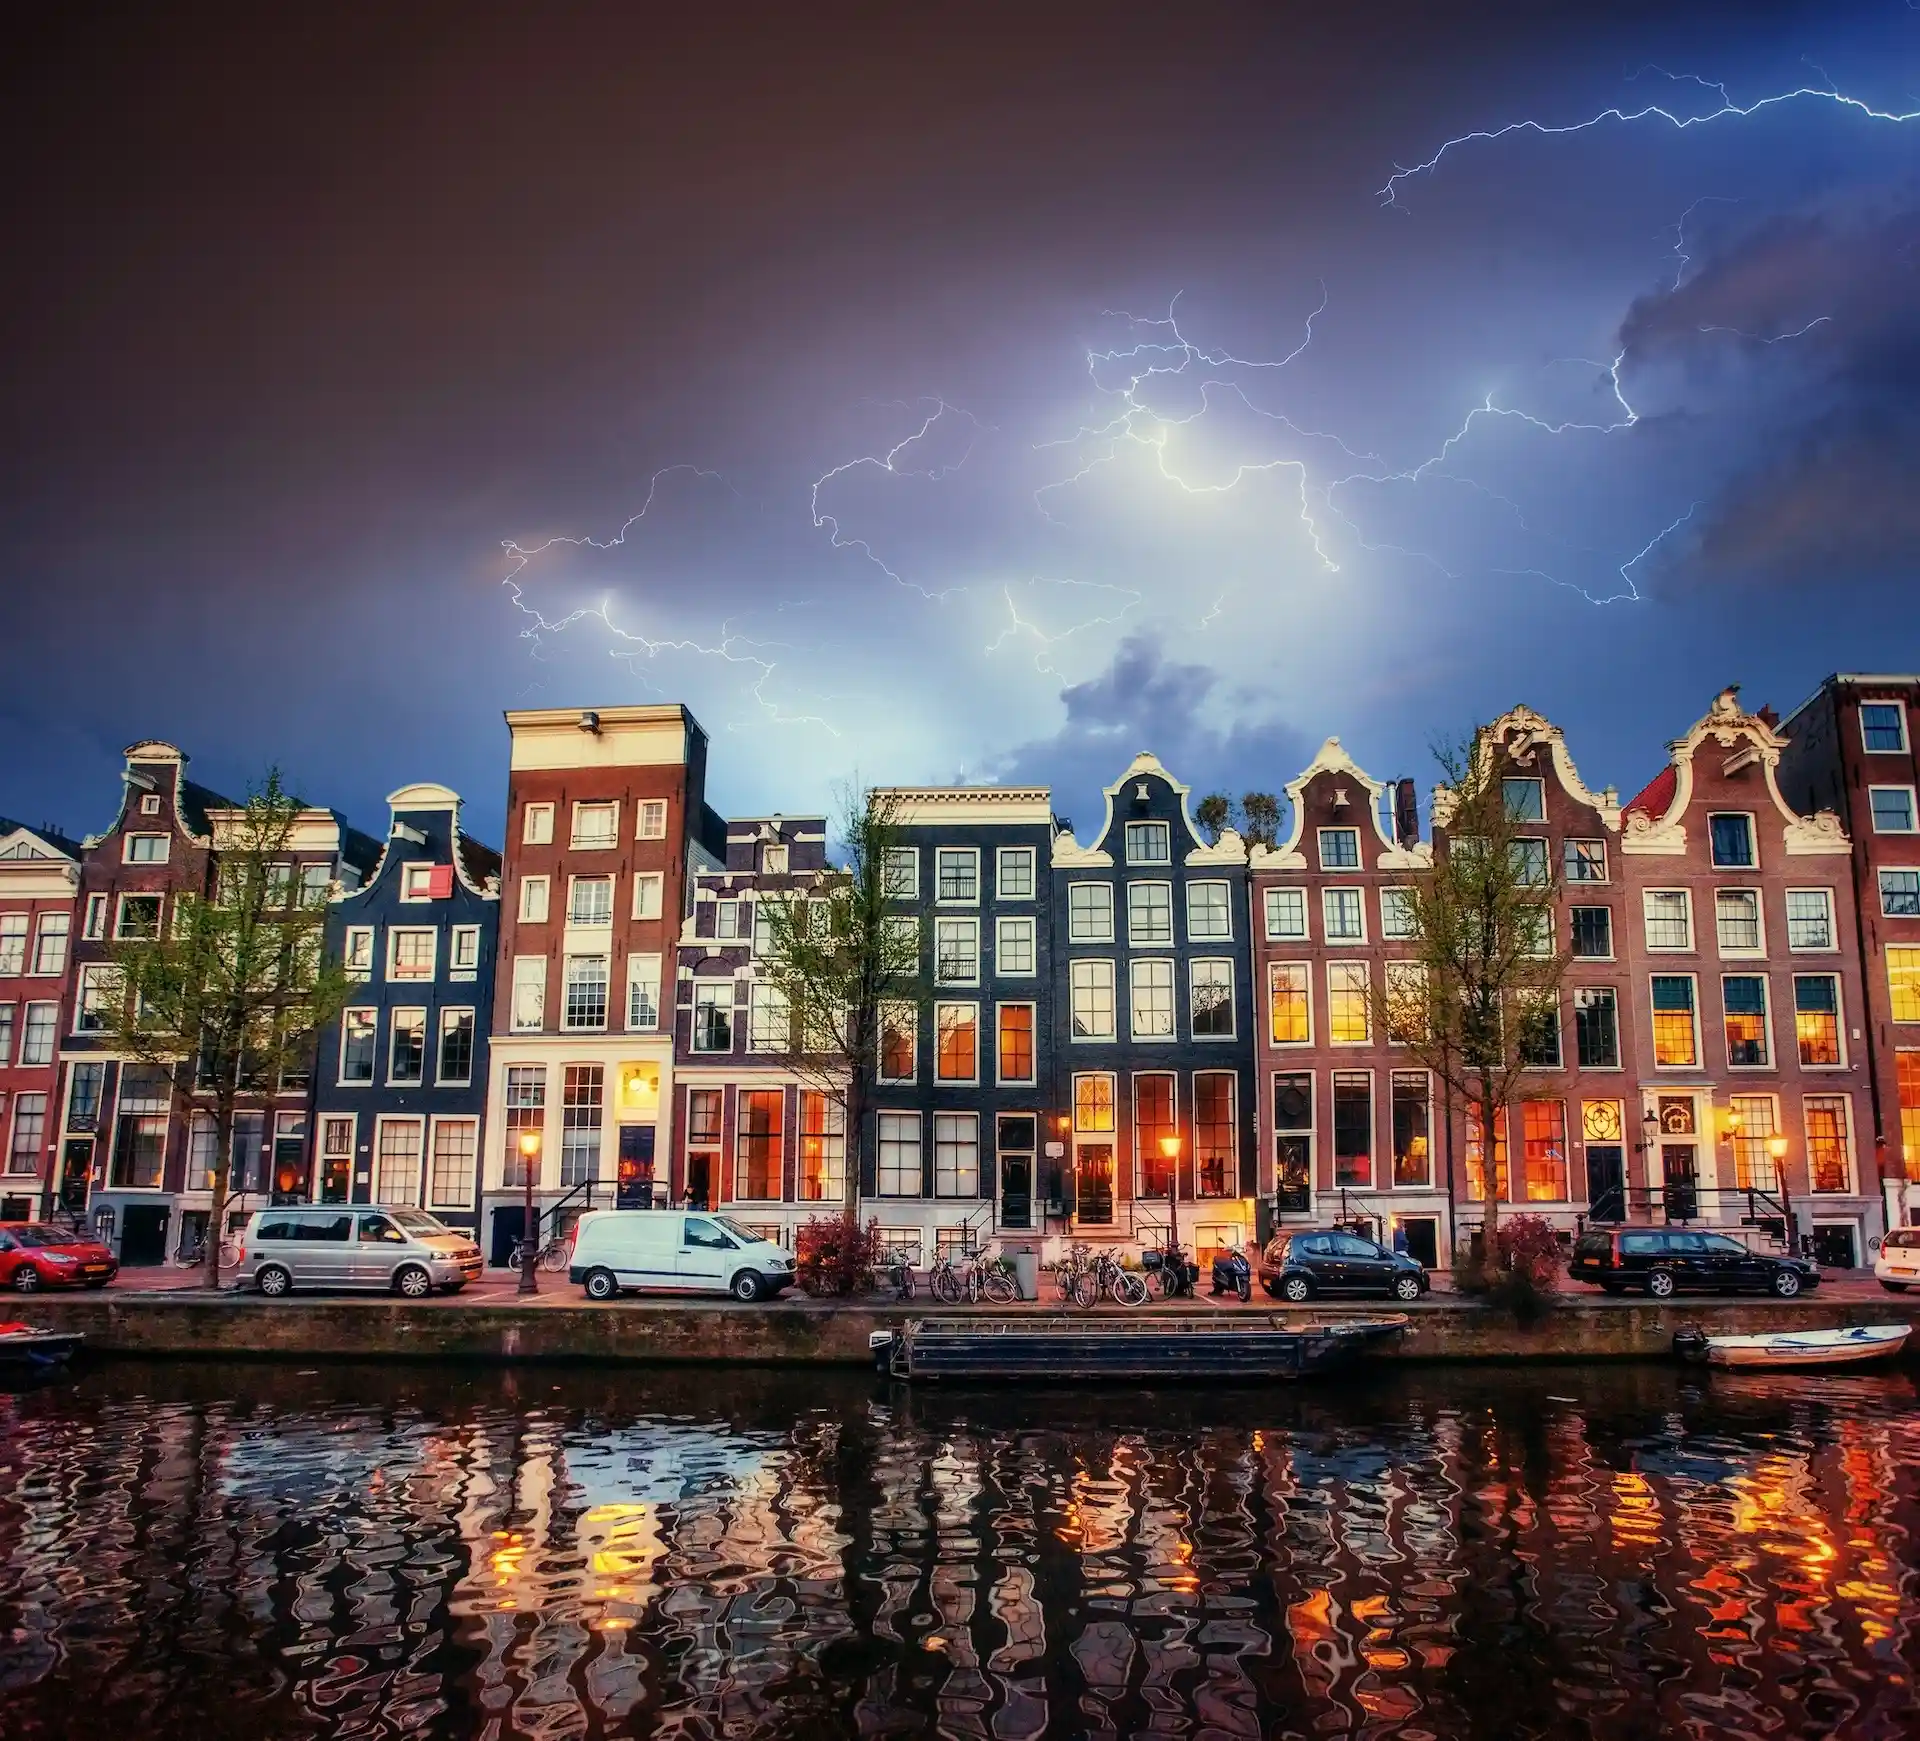 No habrá nuevos hoteles en Ámsterdam para limitar el número de turistas